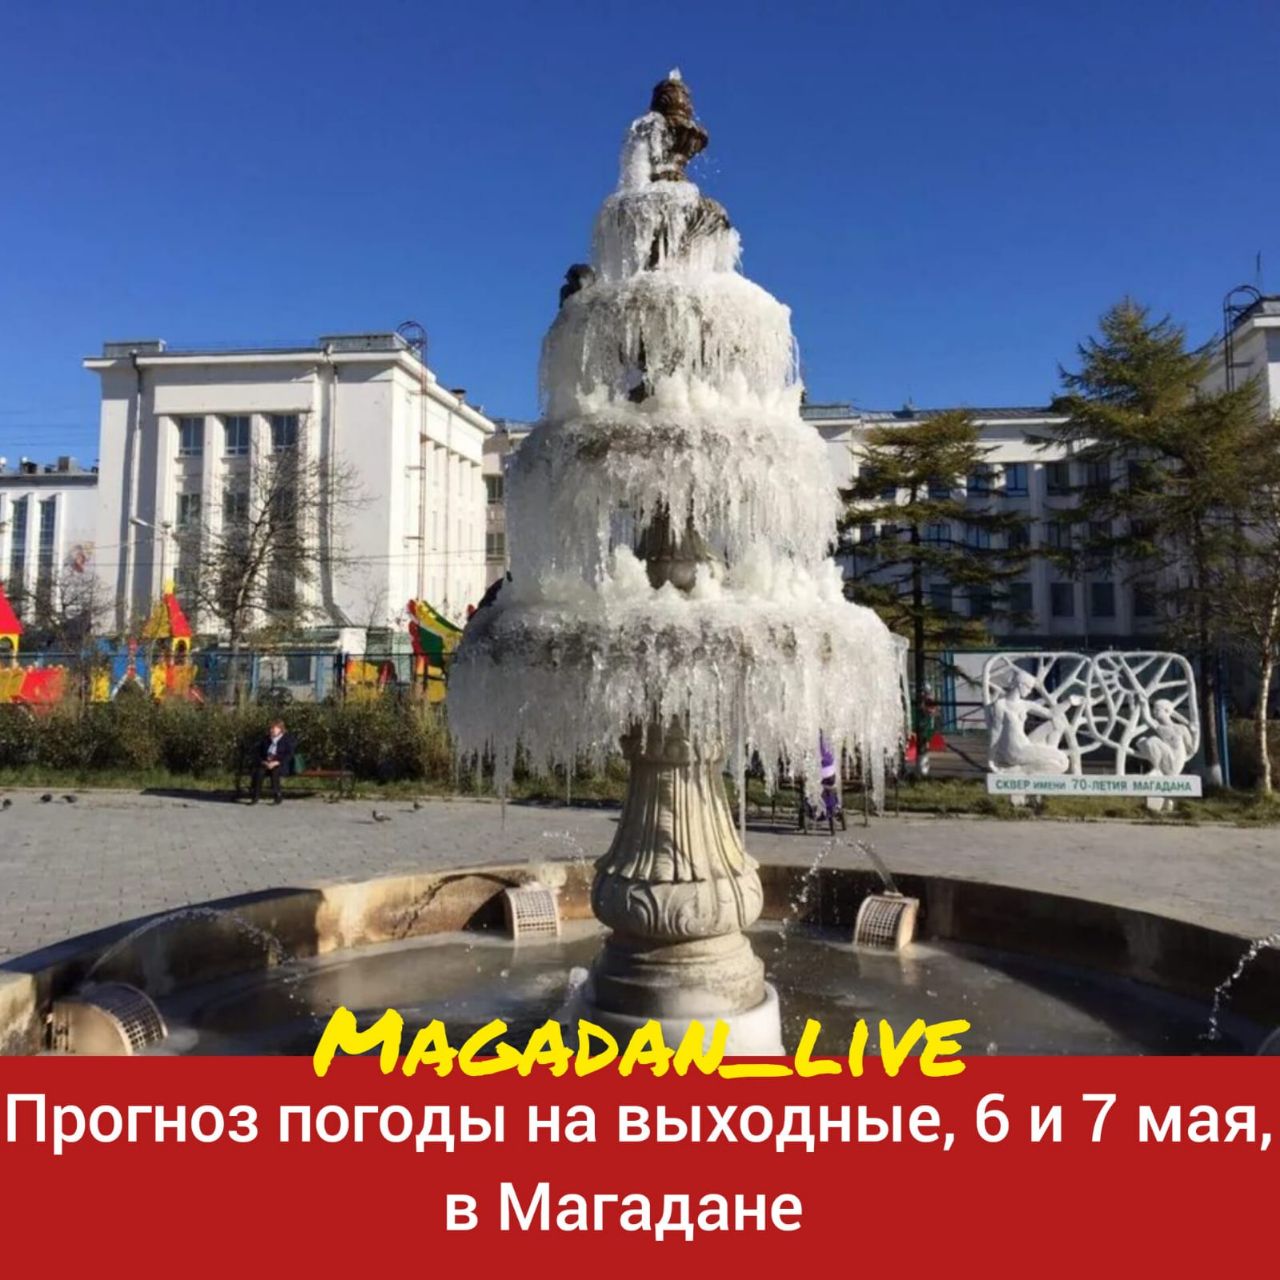 Достопримечательности города Магадана